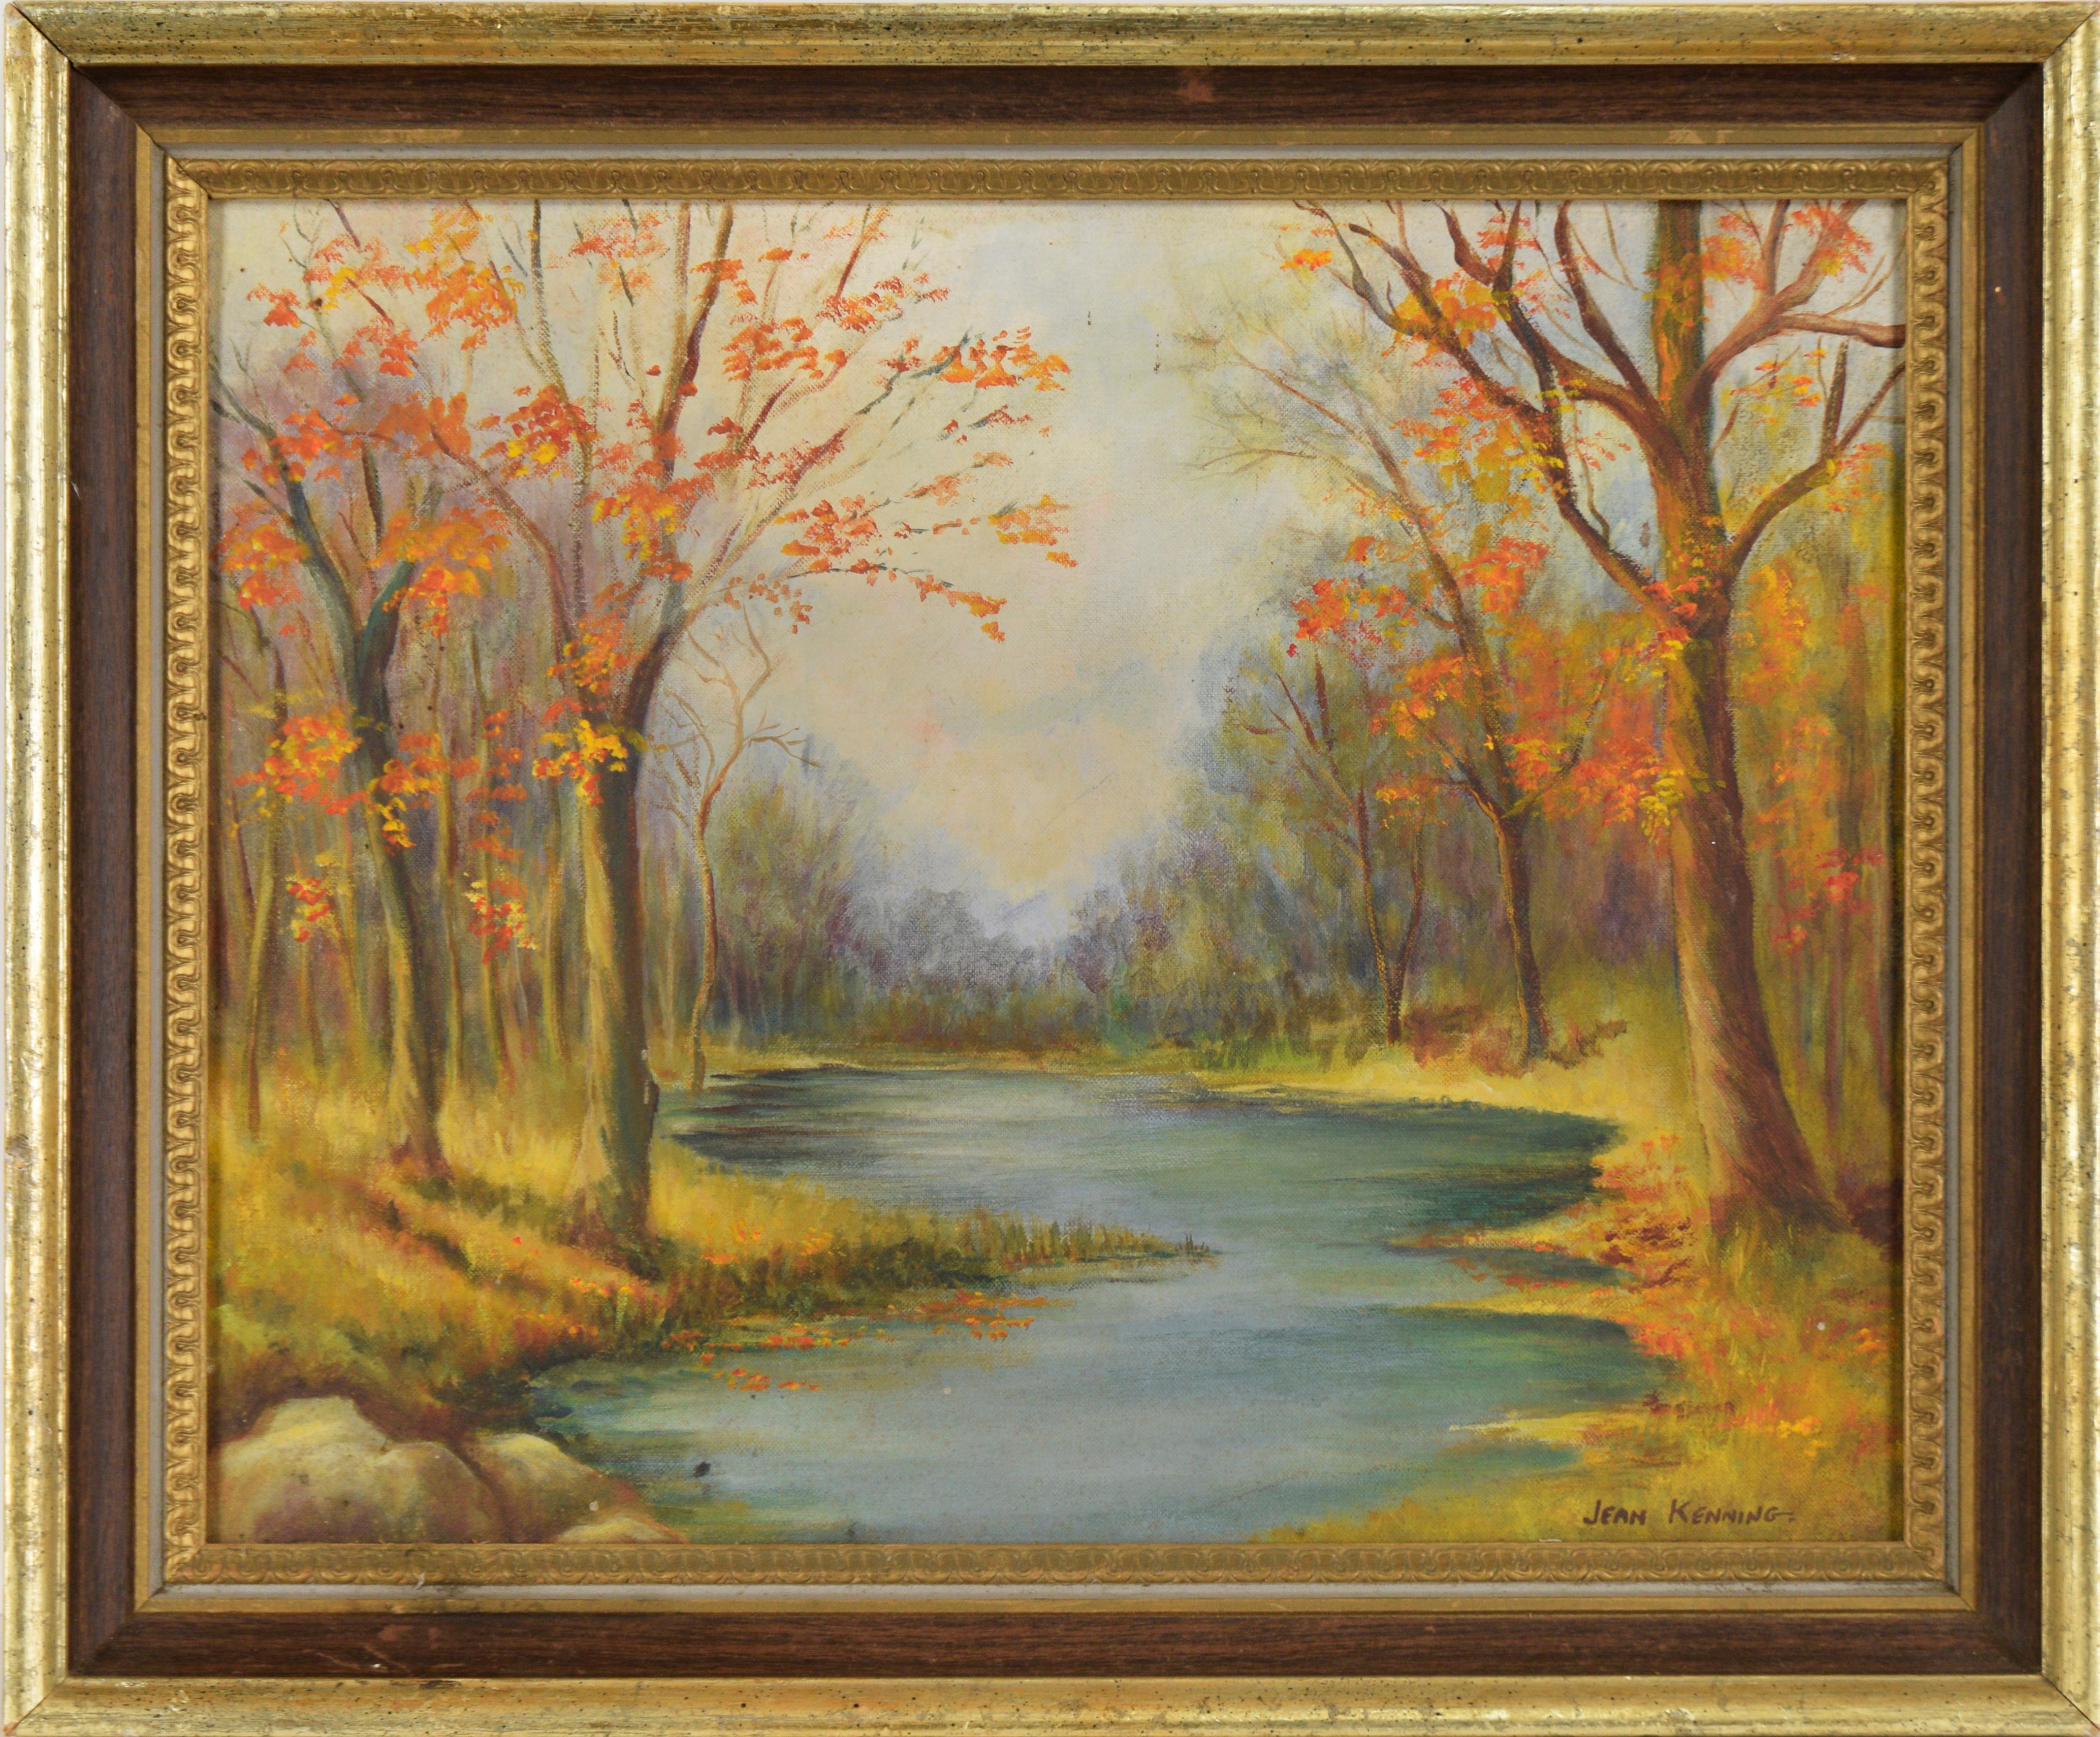 Landscape Painting Jean Kenning - Autumn Stream, paysage à l'huile original de 1973